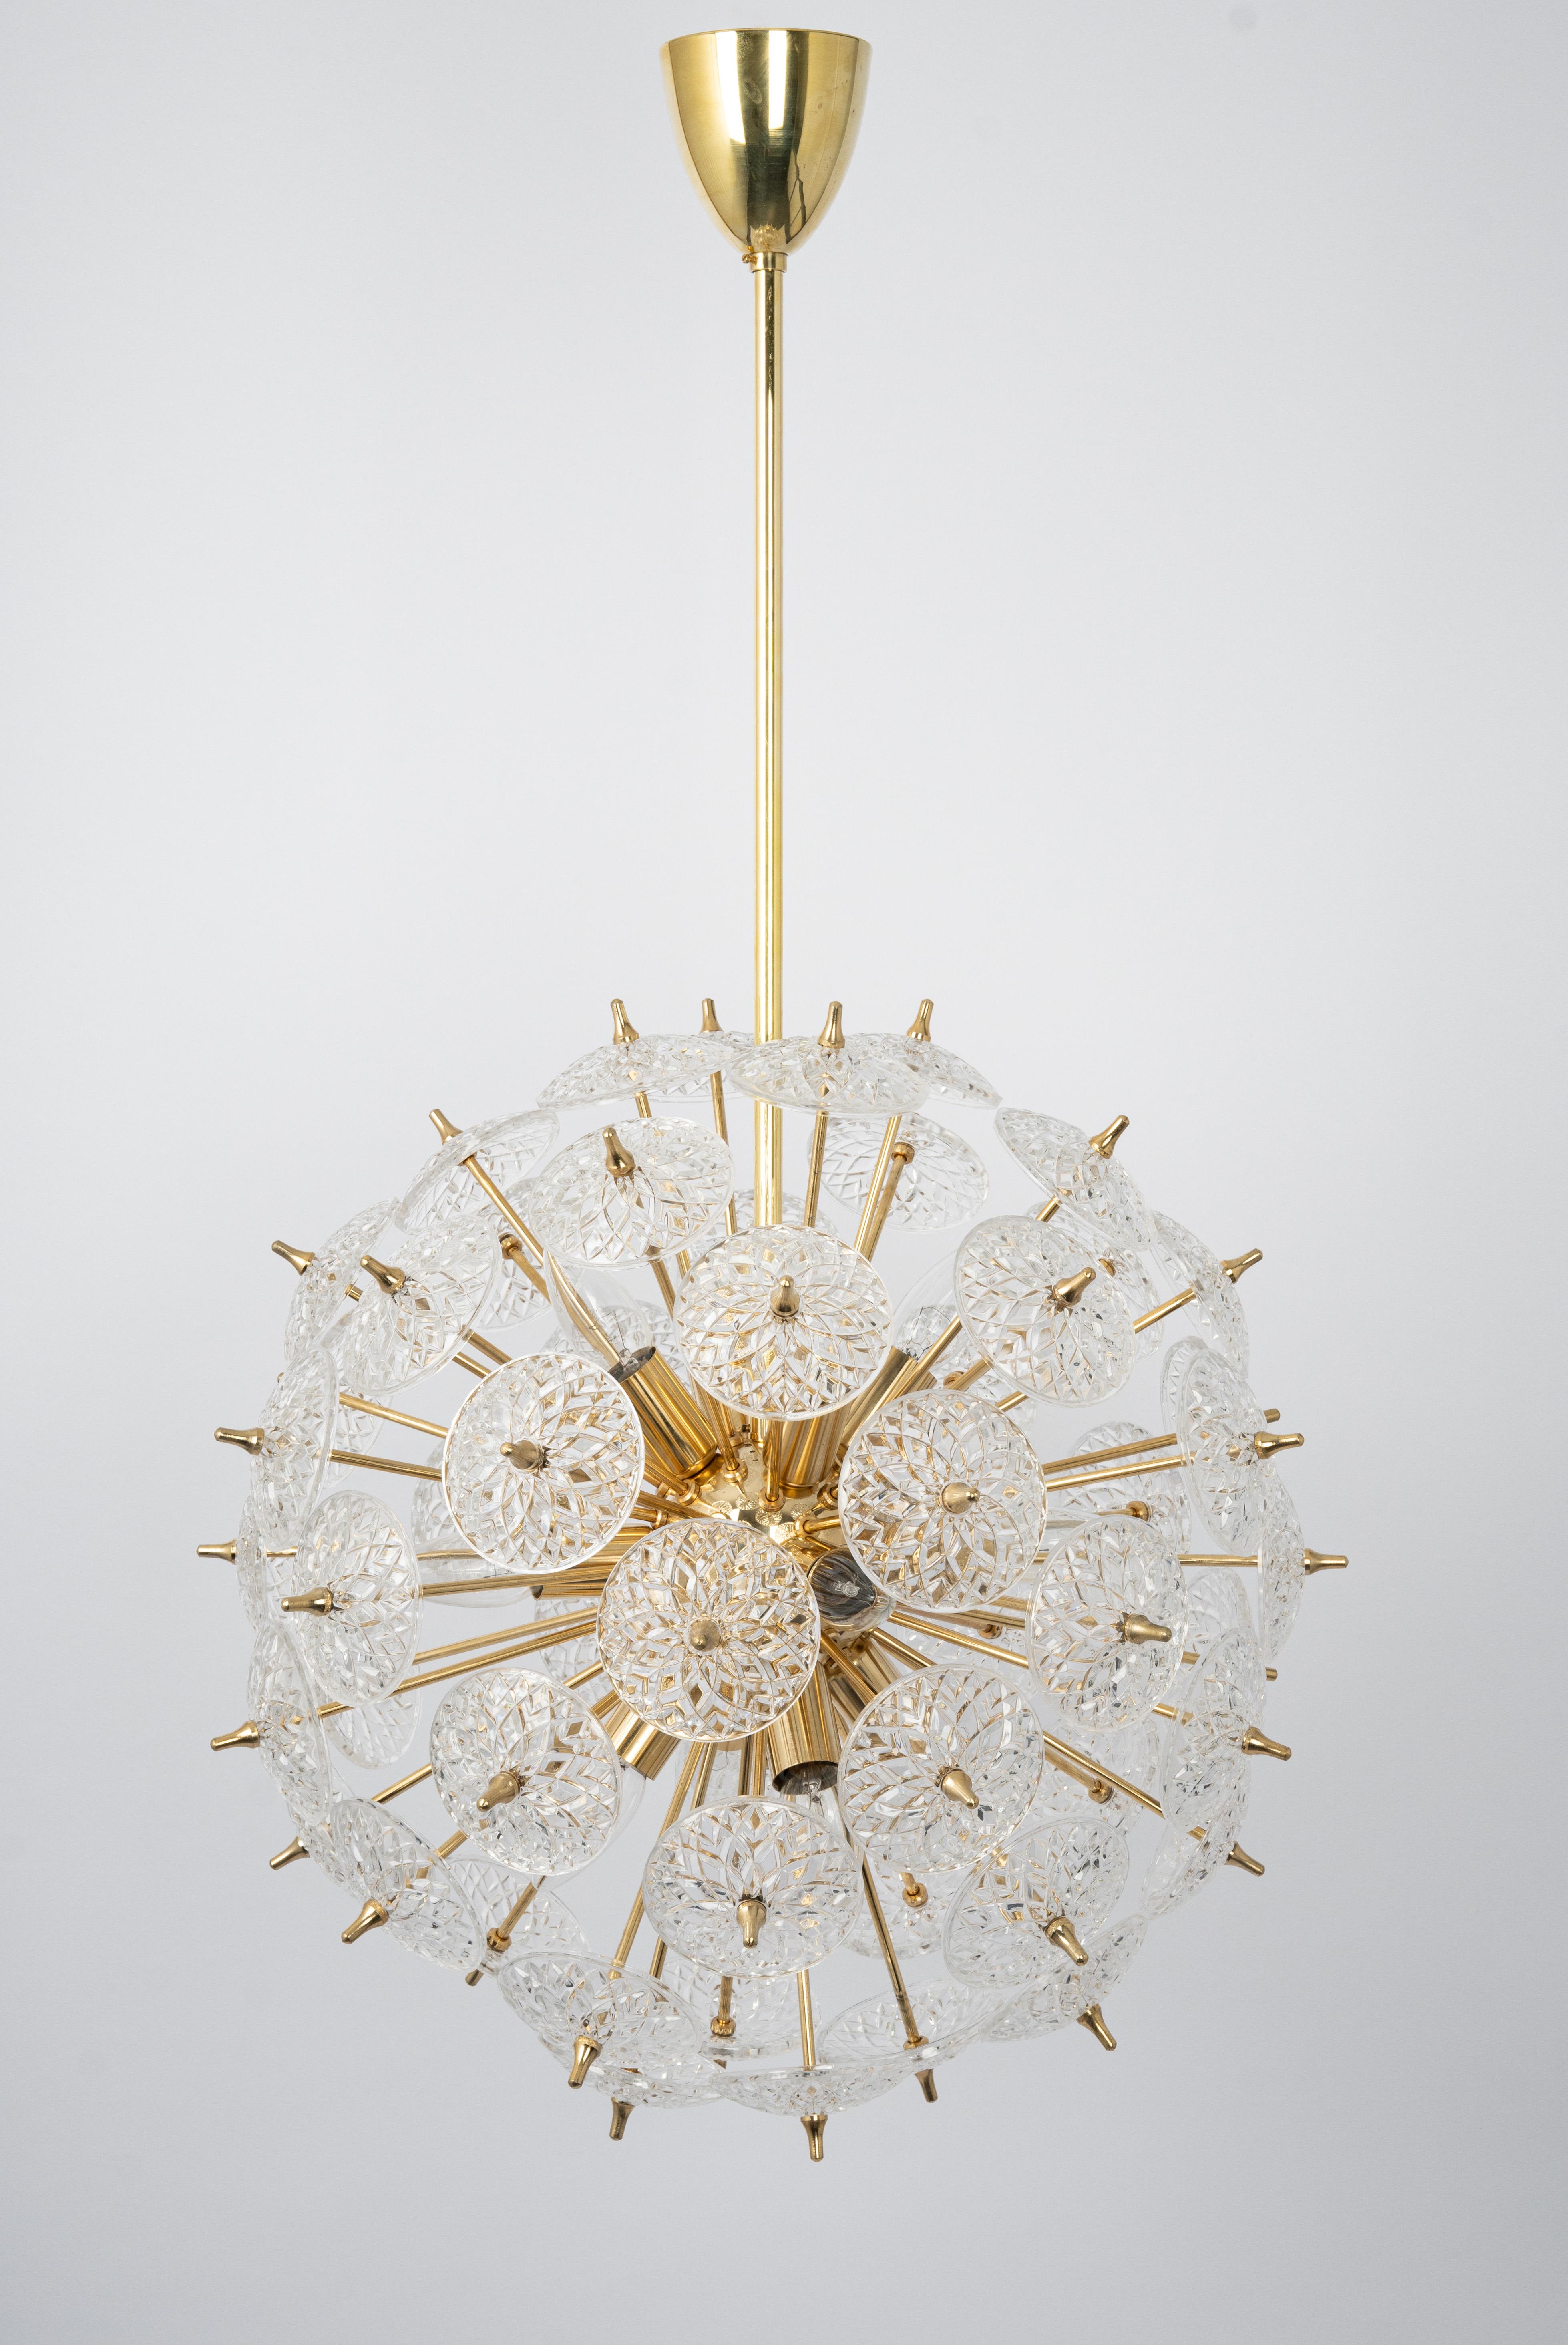 Wunderschöner Sputnik-Kronleuchter aus floralem Glas und Messing, Deutschland, 1970er Jahre.

Jede Hängelampe benötigt 12 x E14 Glühbirnen mit je 40W max.
Glühbirnen sind nicht enthalten. Es ist möglich, diese Leuchte in allen Ländern zu